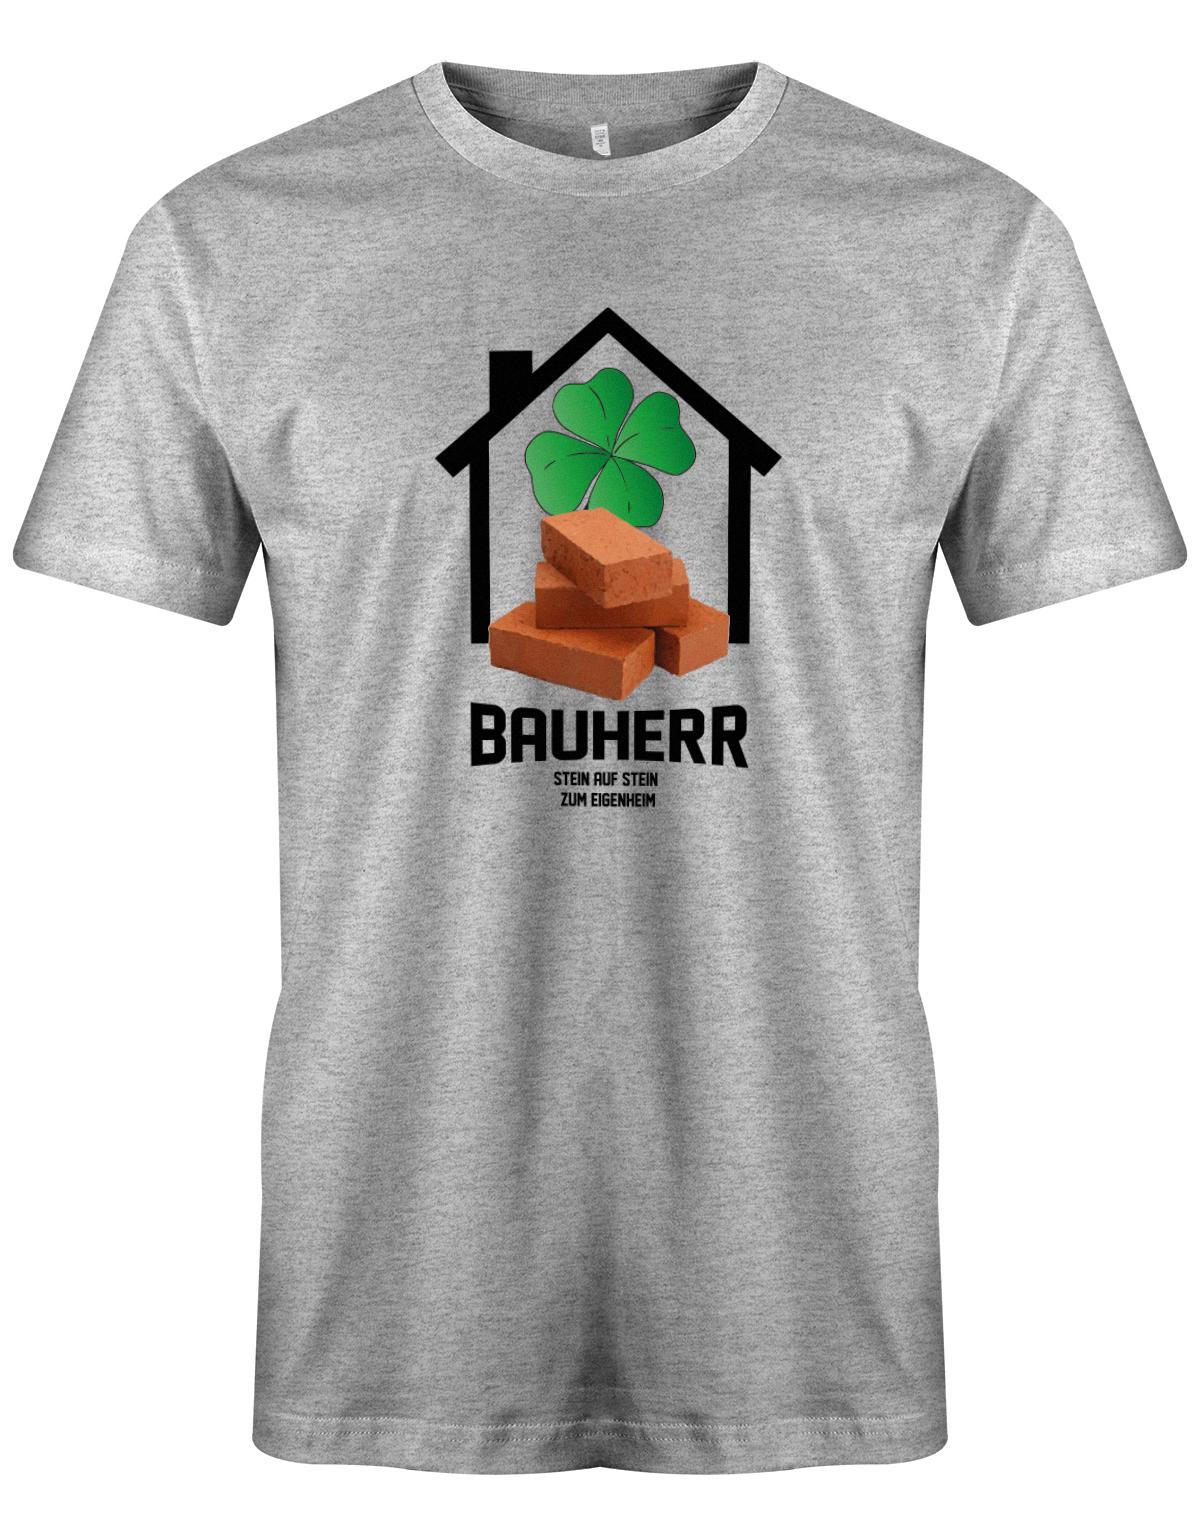 Bauherr-Stein-auf-Stein-zum-Eigenheim-Herren-Shirt-Grau